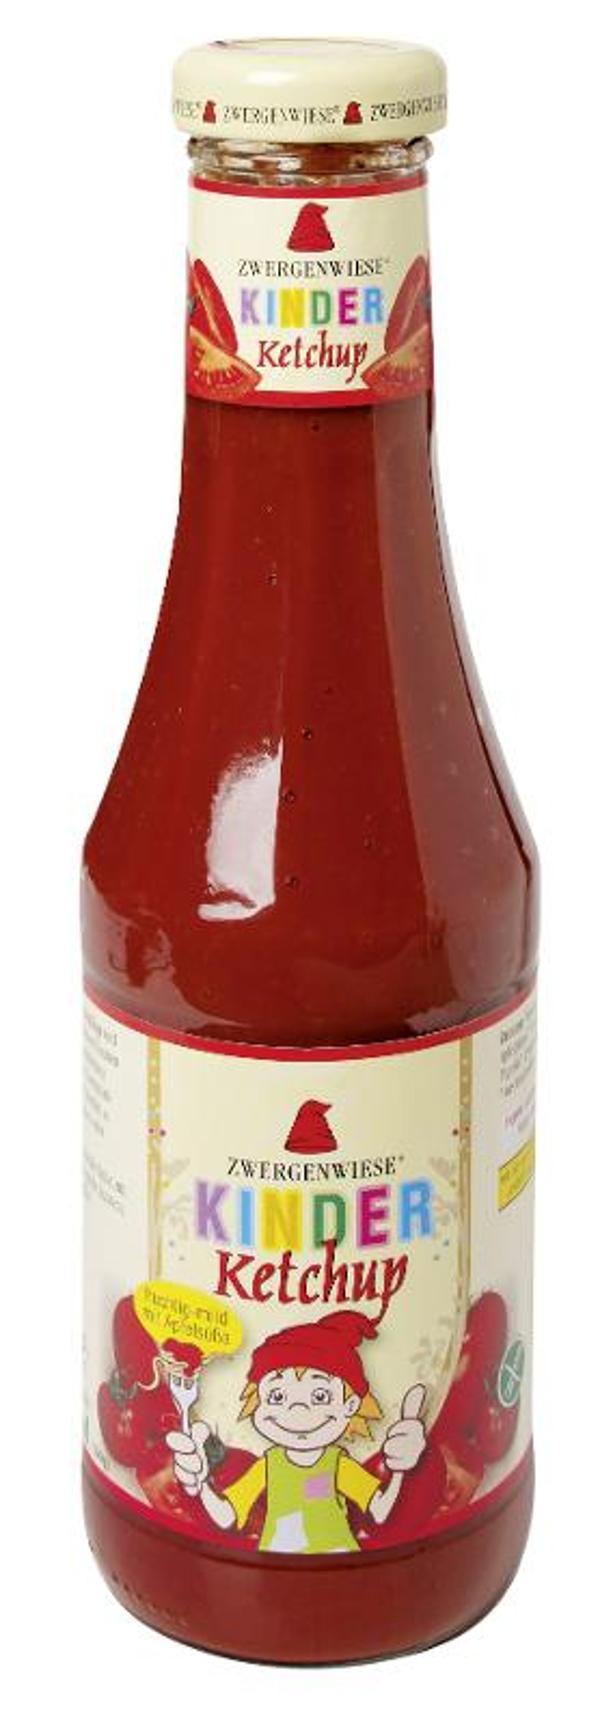 Produktfoto zu Ketchup für Kinder 500g